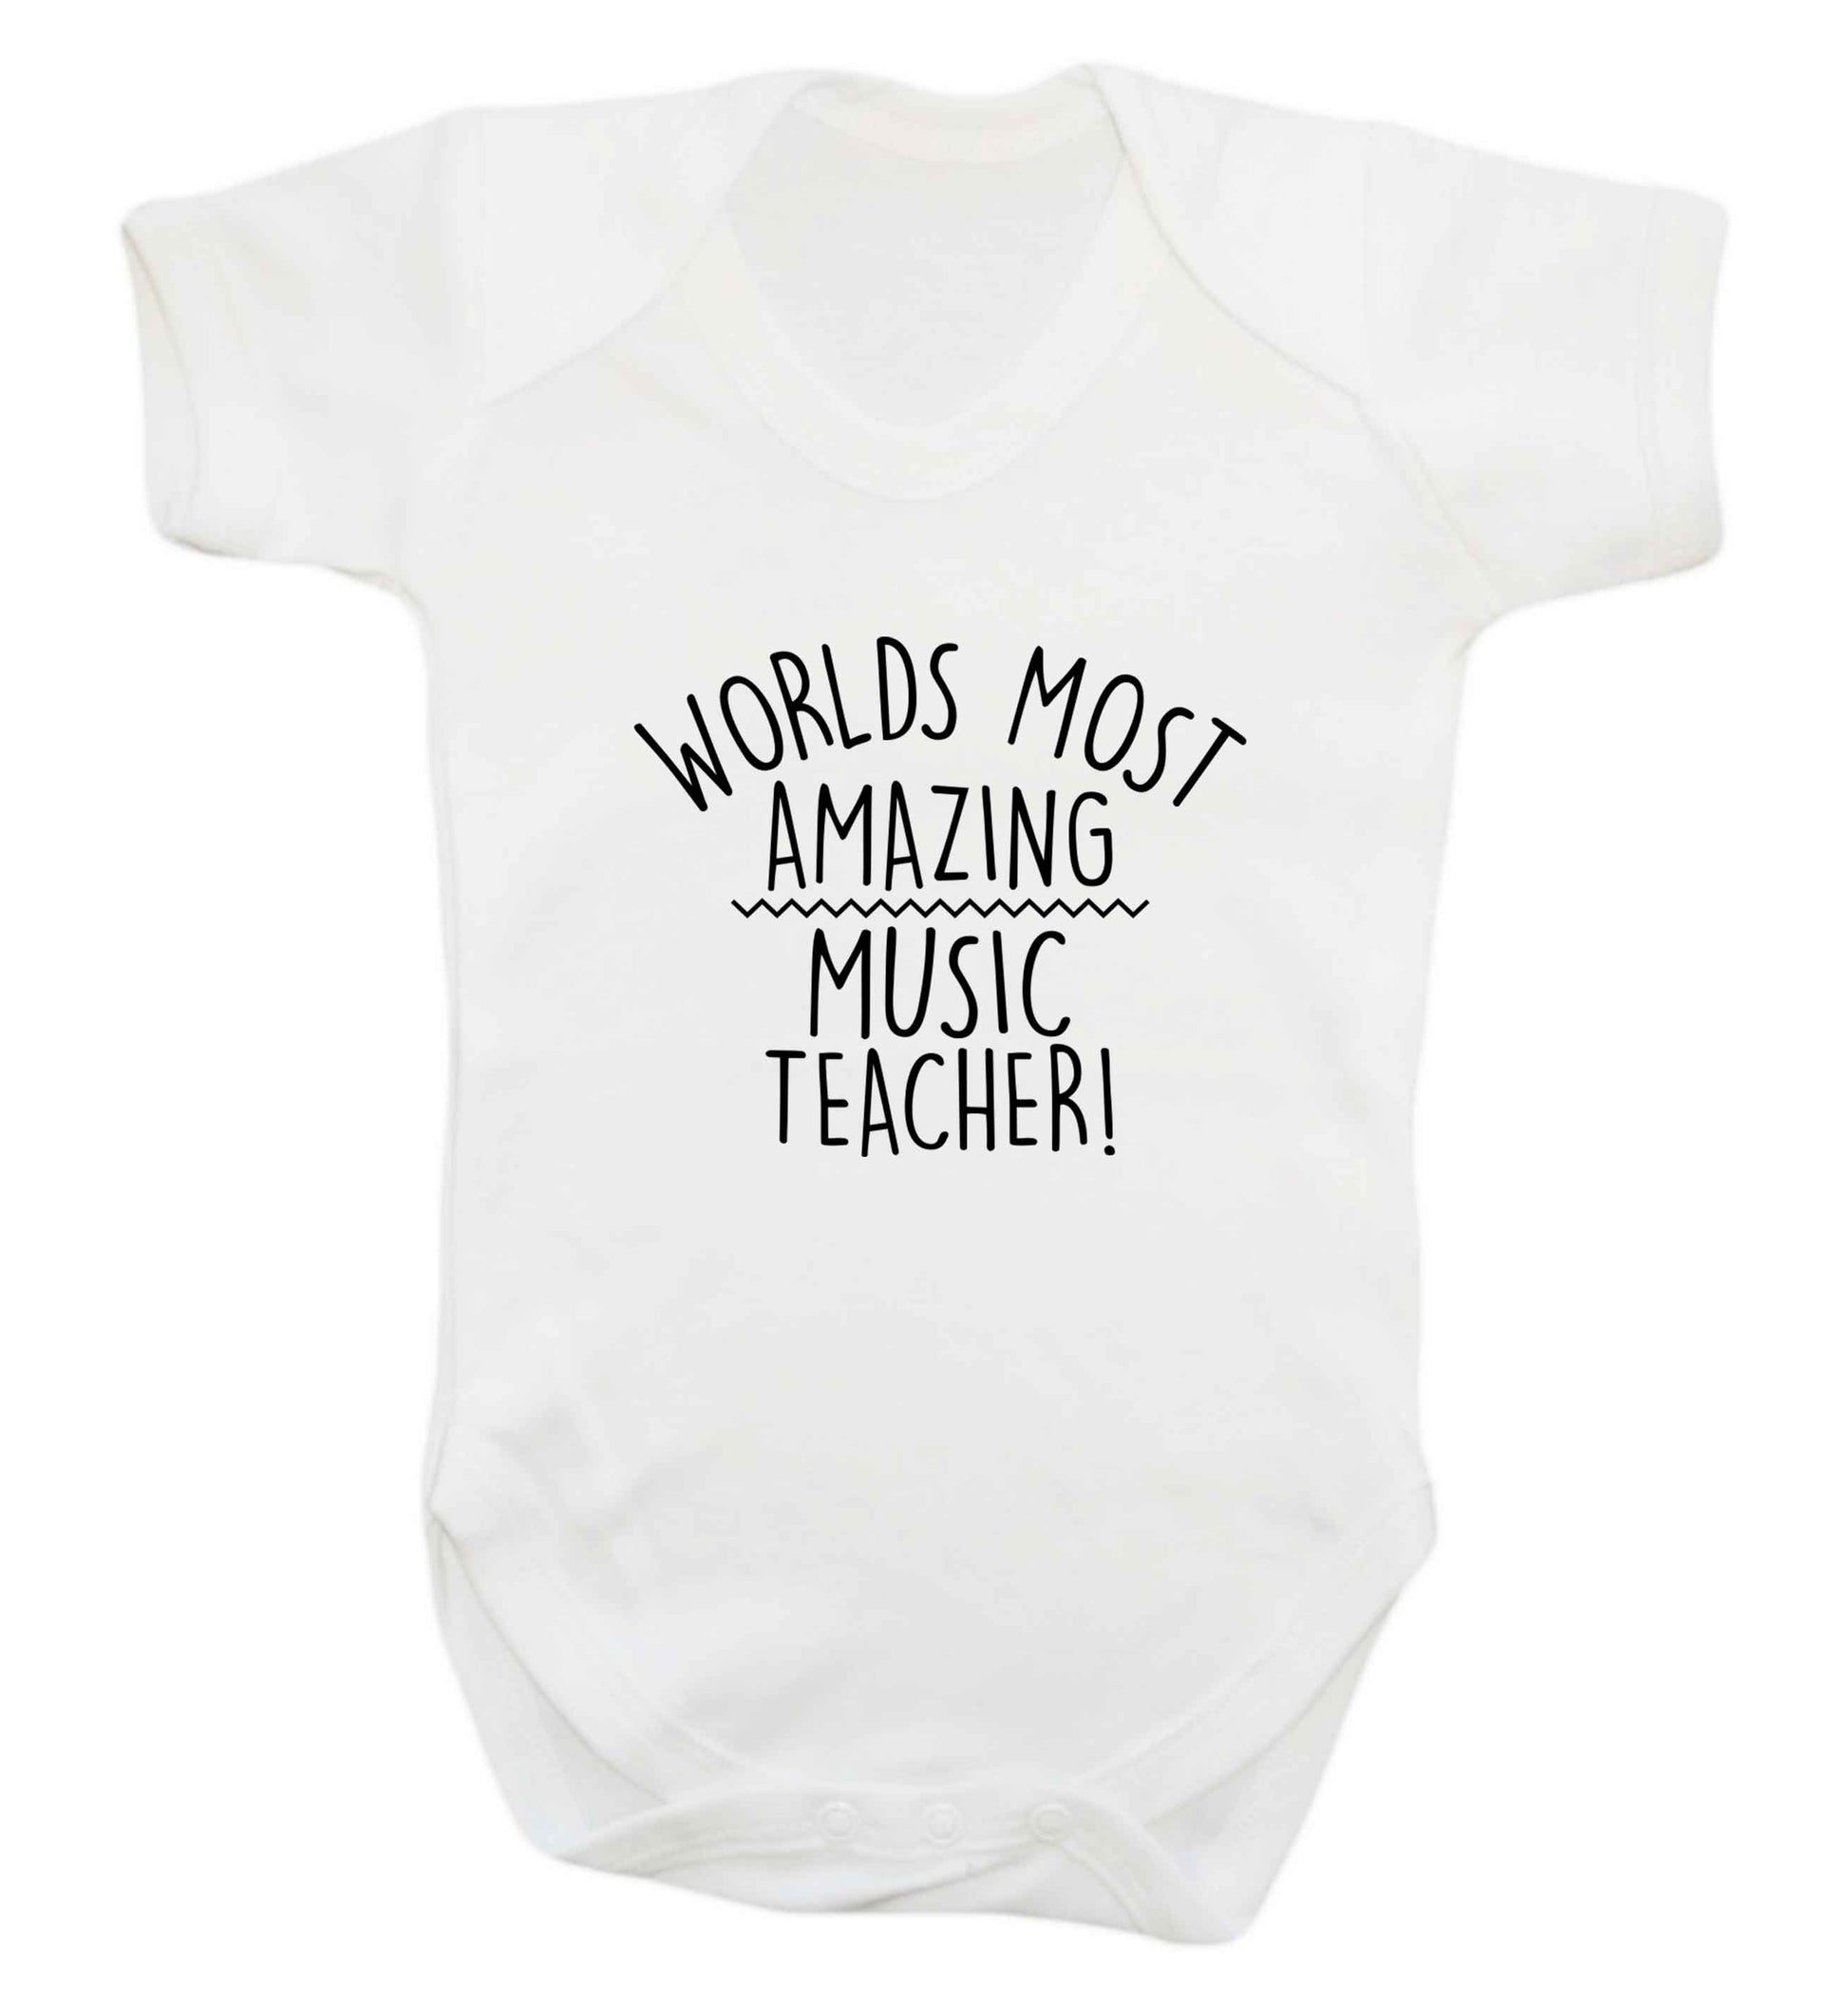 Worlds most amazing music teacher baby vest white 18-24 months